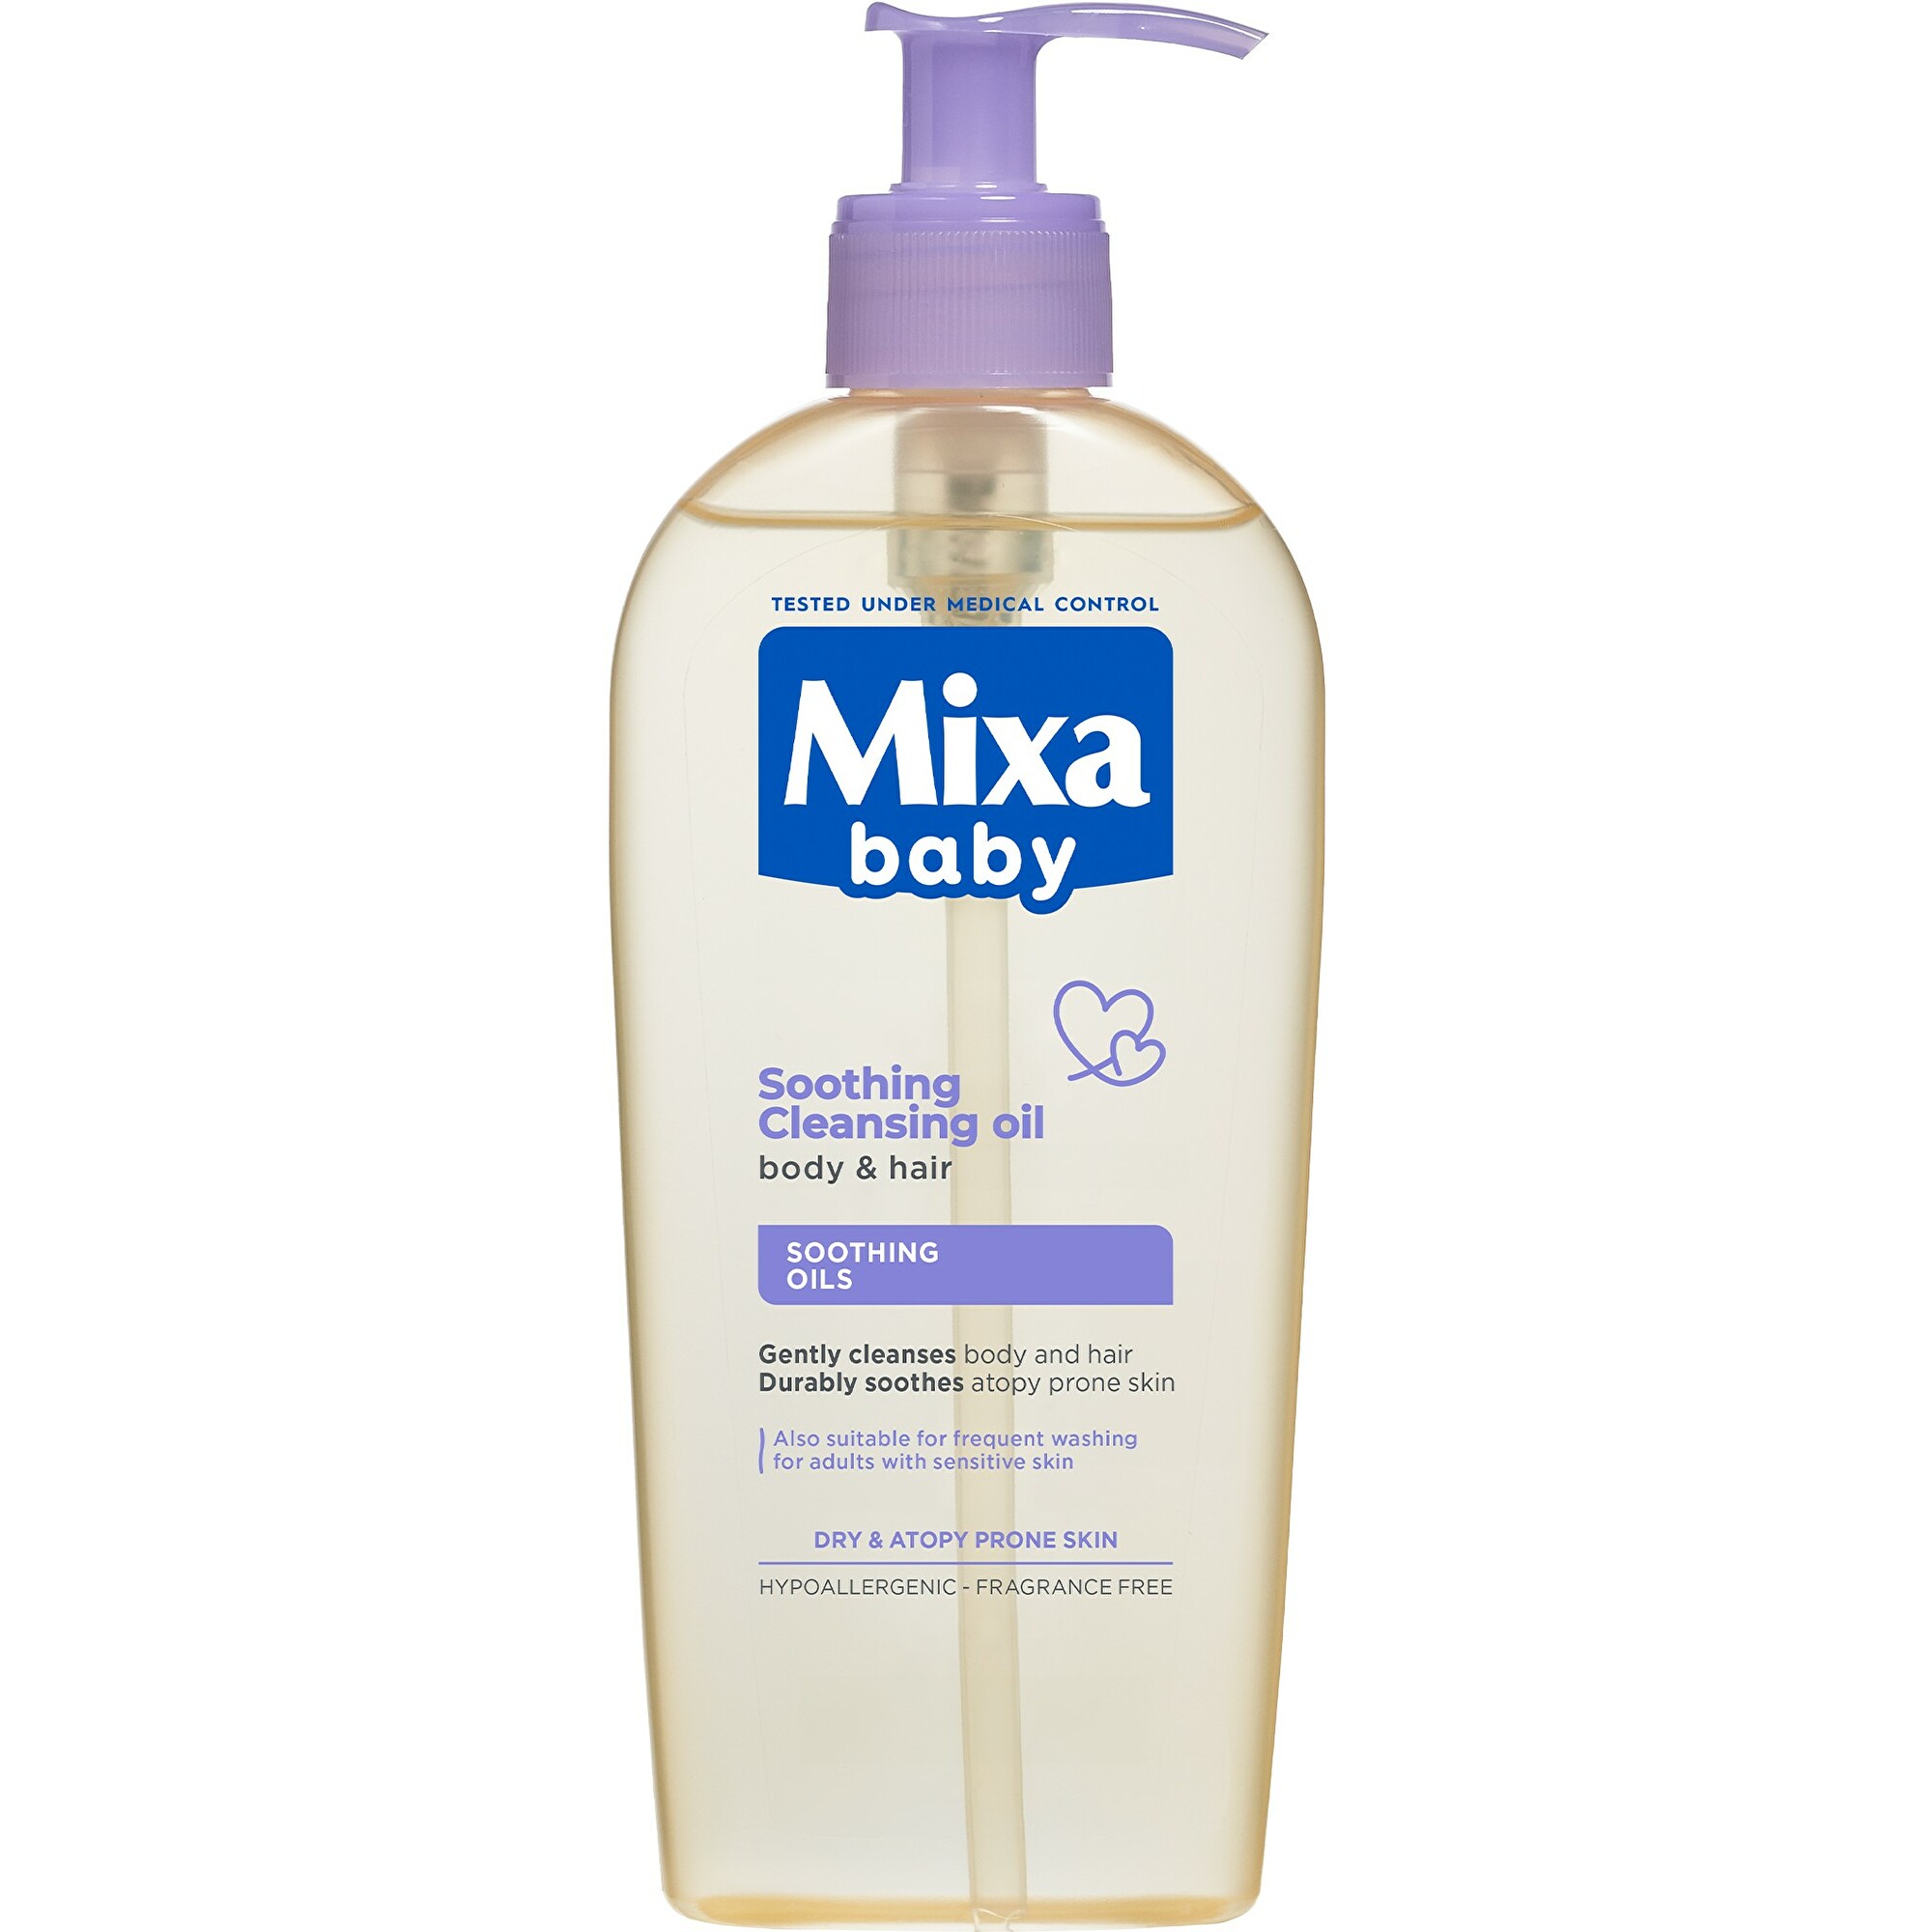 Mixa Zklidňující a čisticí olej pro děti (Soothing Cleansing Oil For Body & Hair) 250 ml